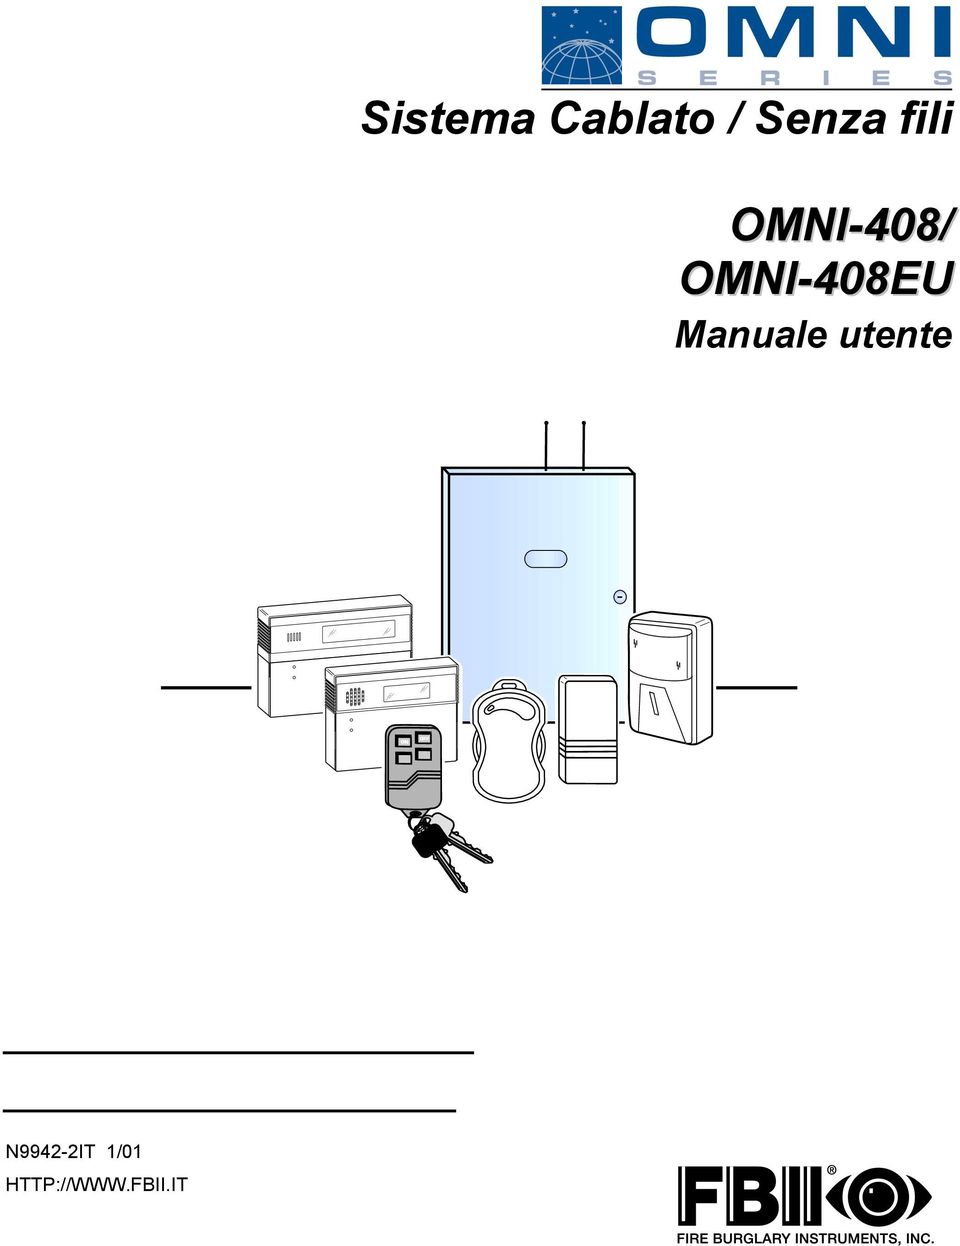 OMNI-408EU Manuale